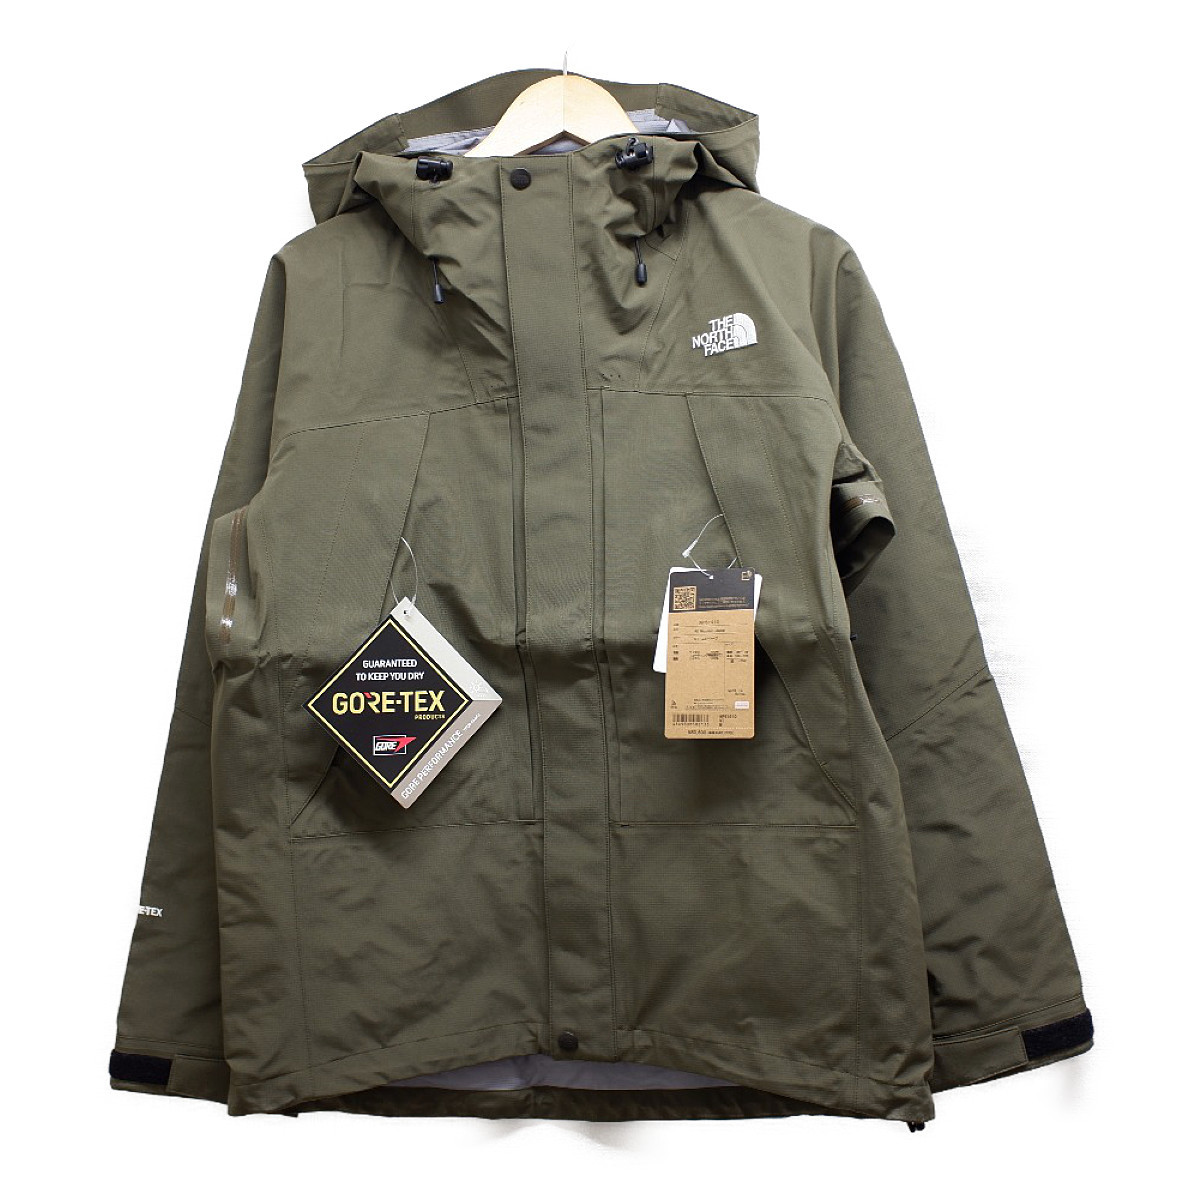 ノースフェイスのNP61910 GORETEX All Mountain Jacket　オールマウンテンジャケット　ニュートープの買取実績です。